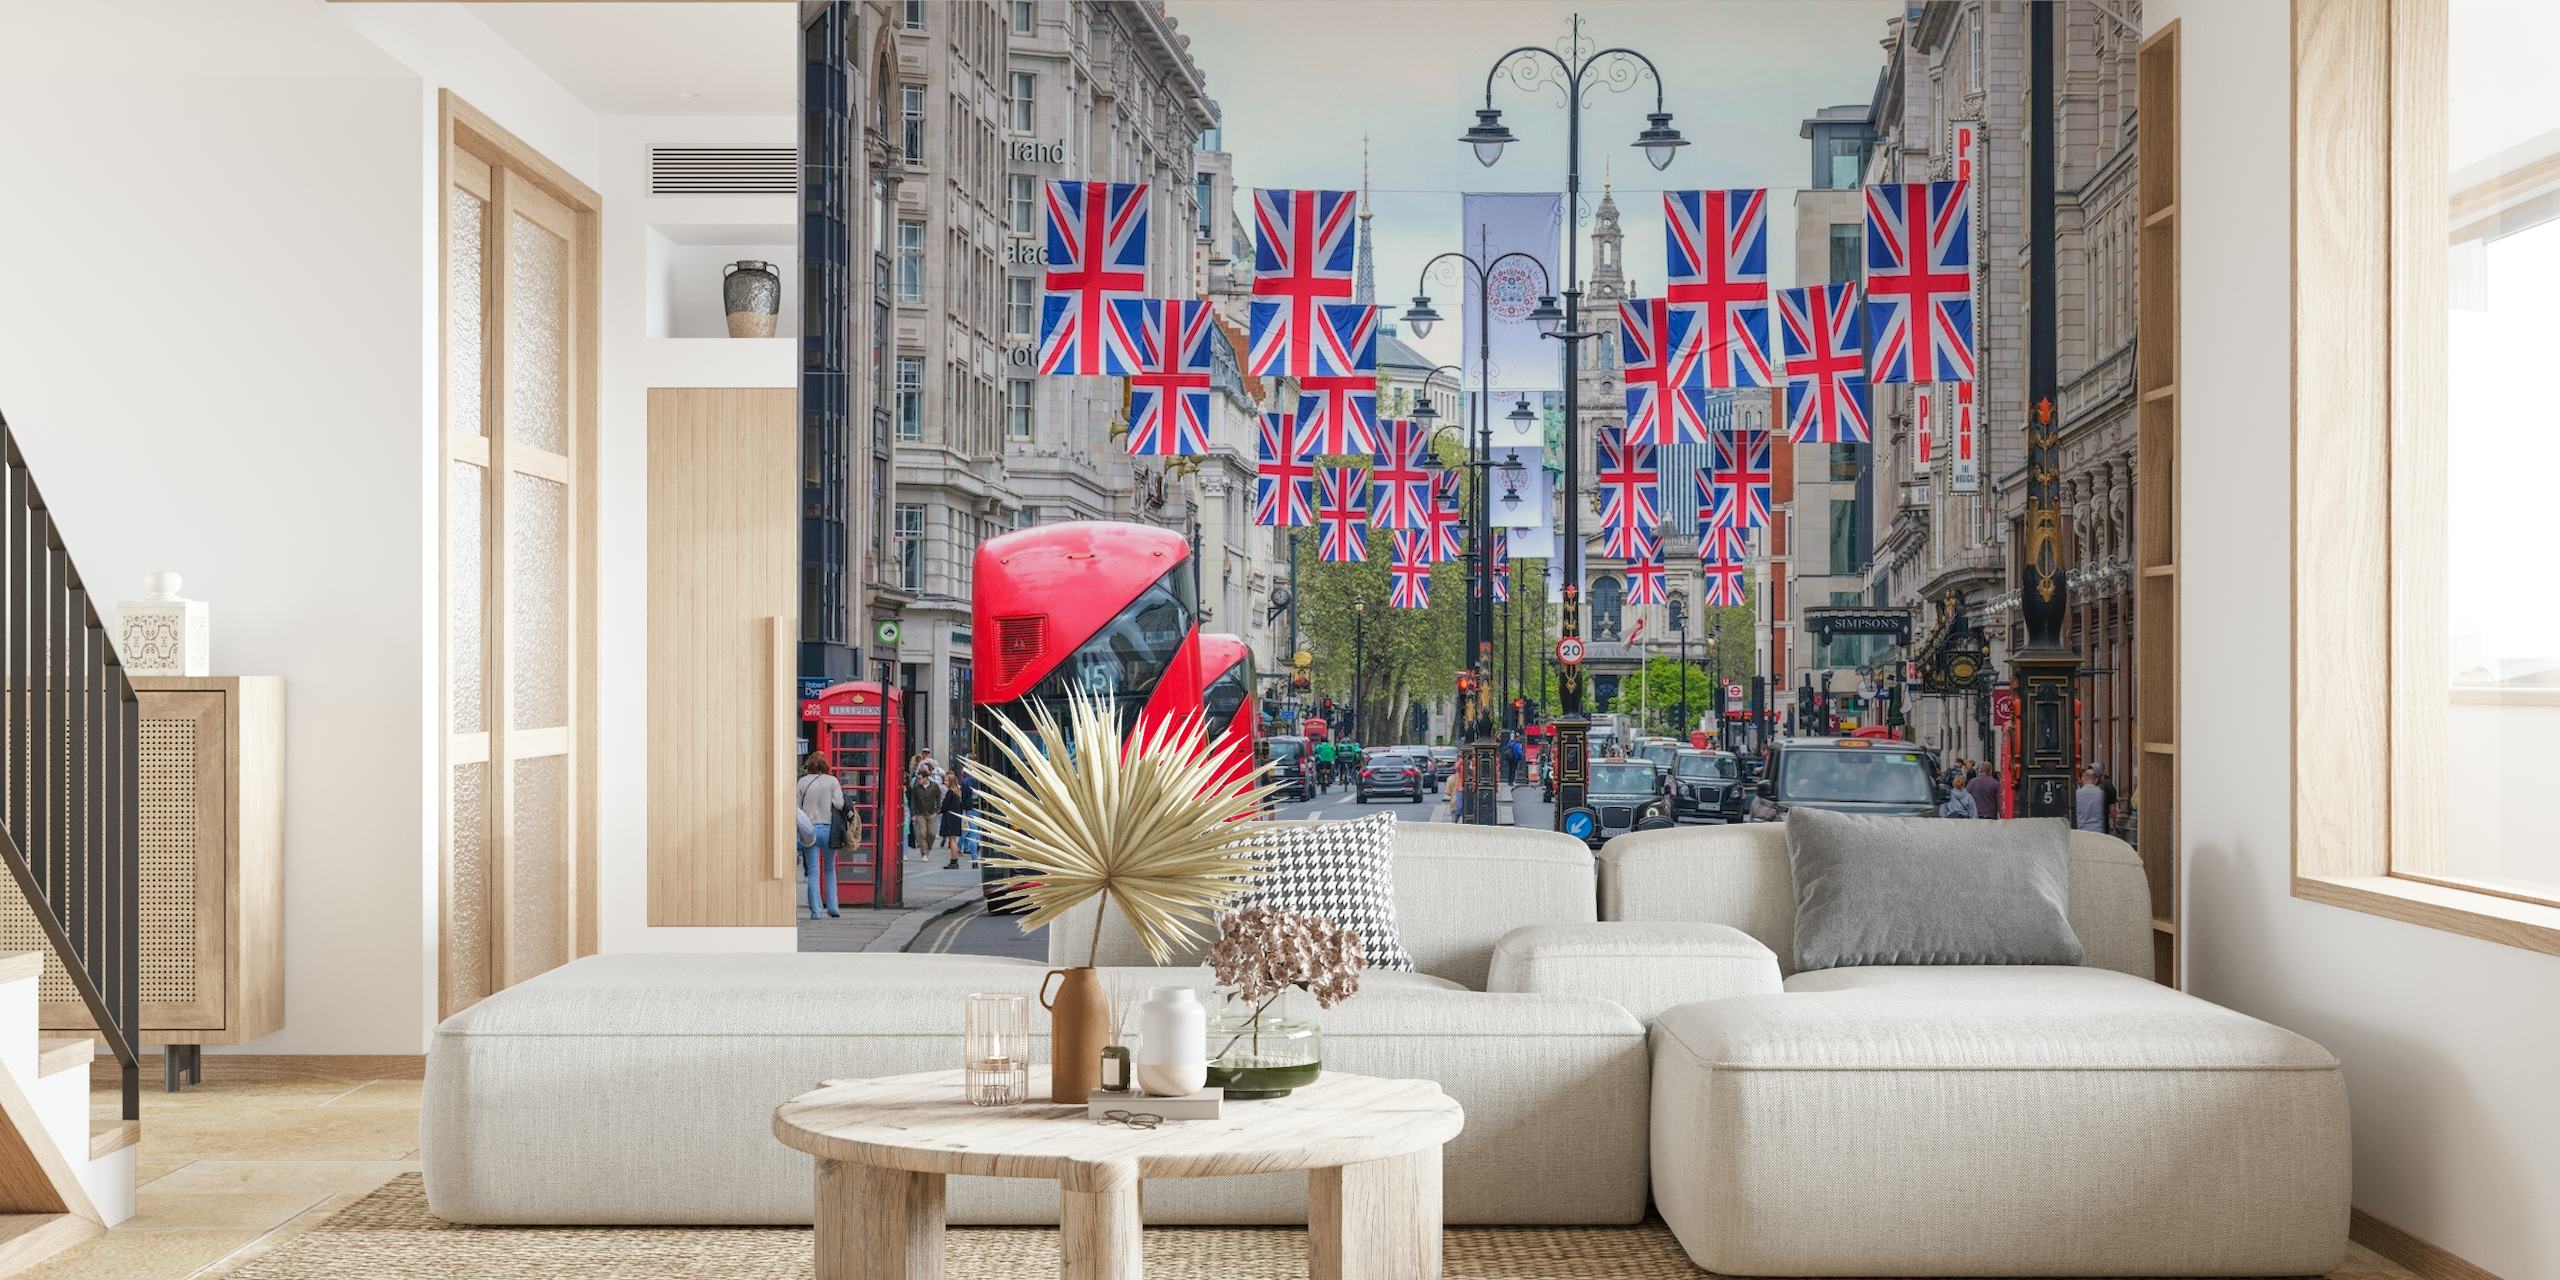 Scène de rue de Londres avec des drapeaux Union Jack et une fresque murale de bus rouge à deux étages